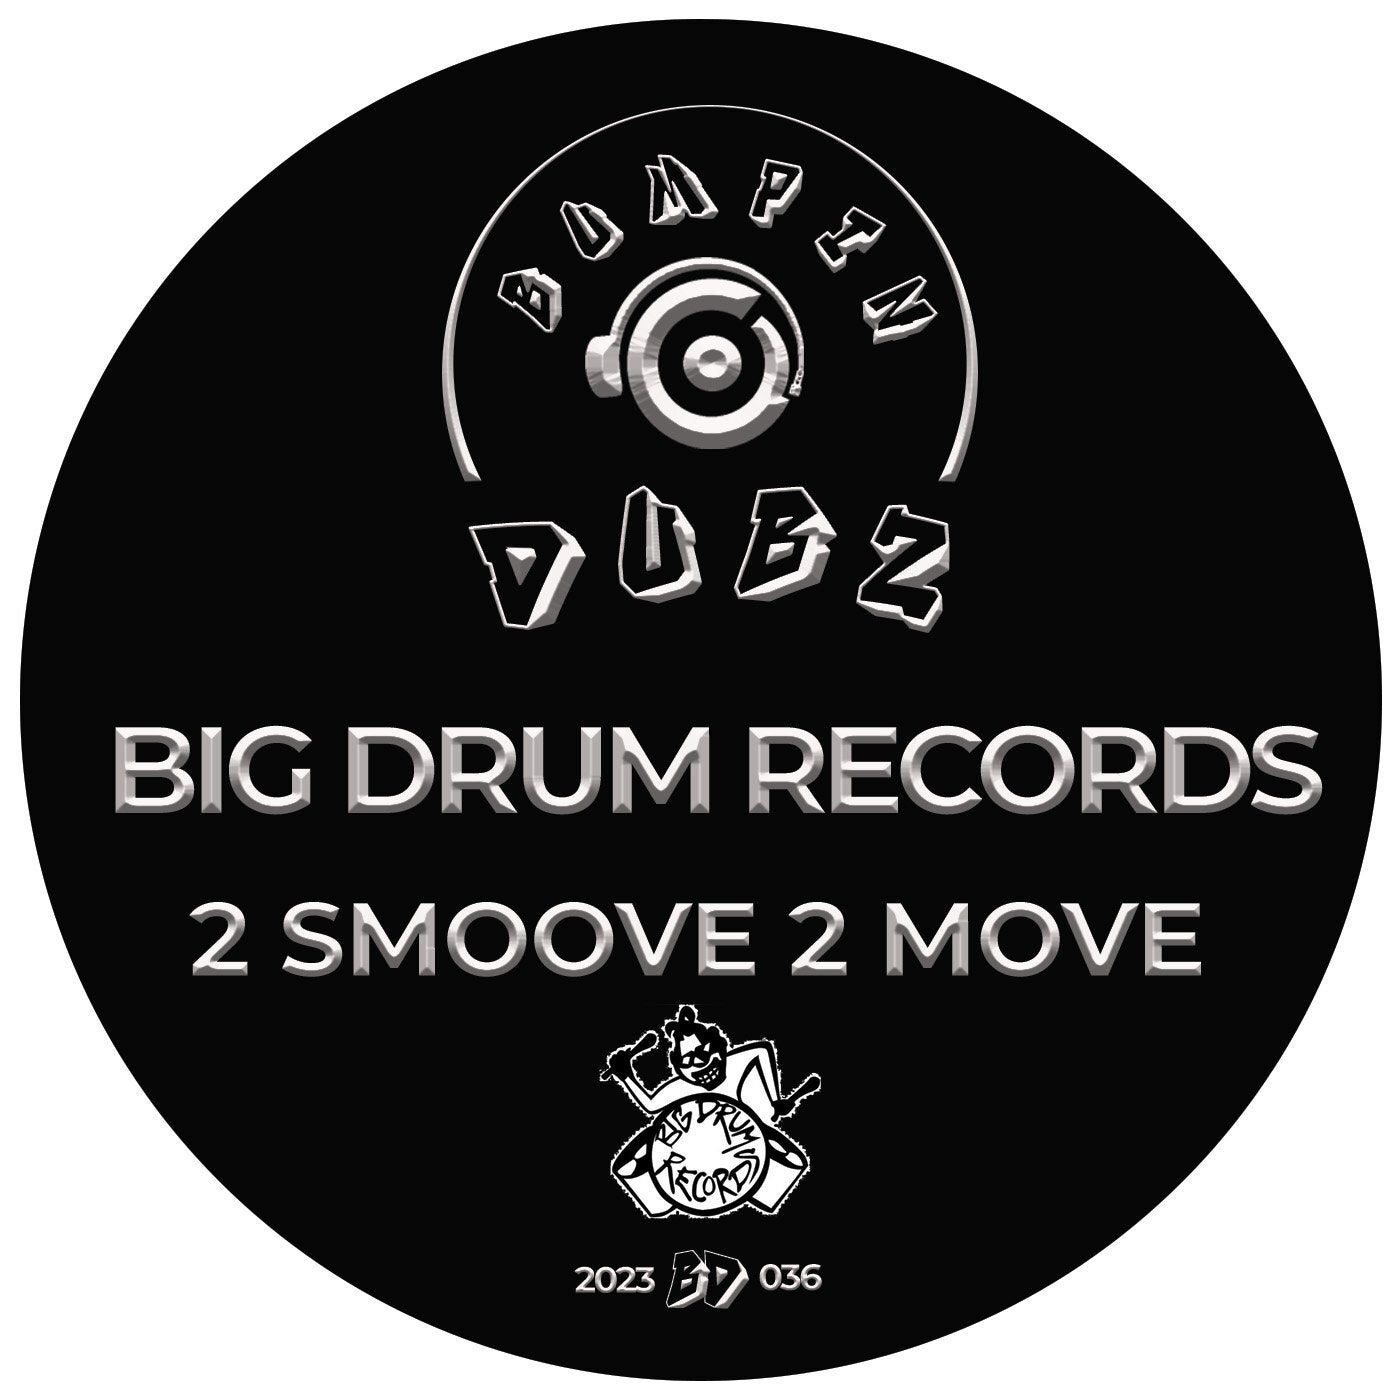 Big Drum Records - 2 Smoove 2 Move [Bumpin Dubz]